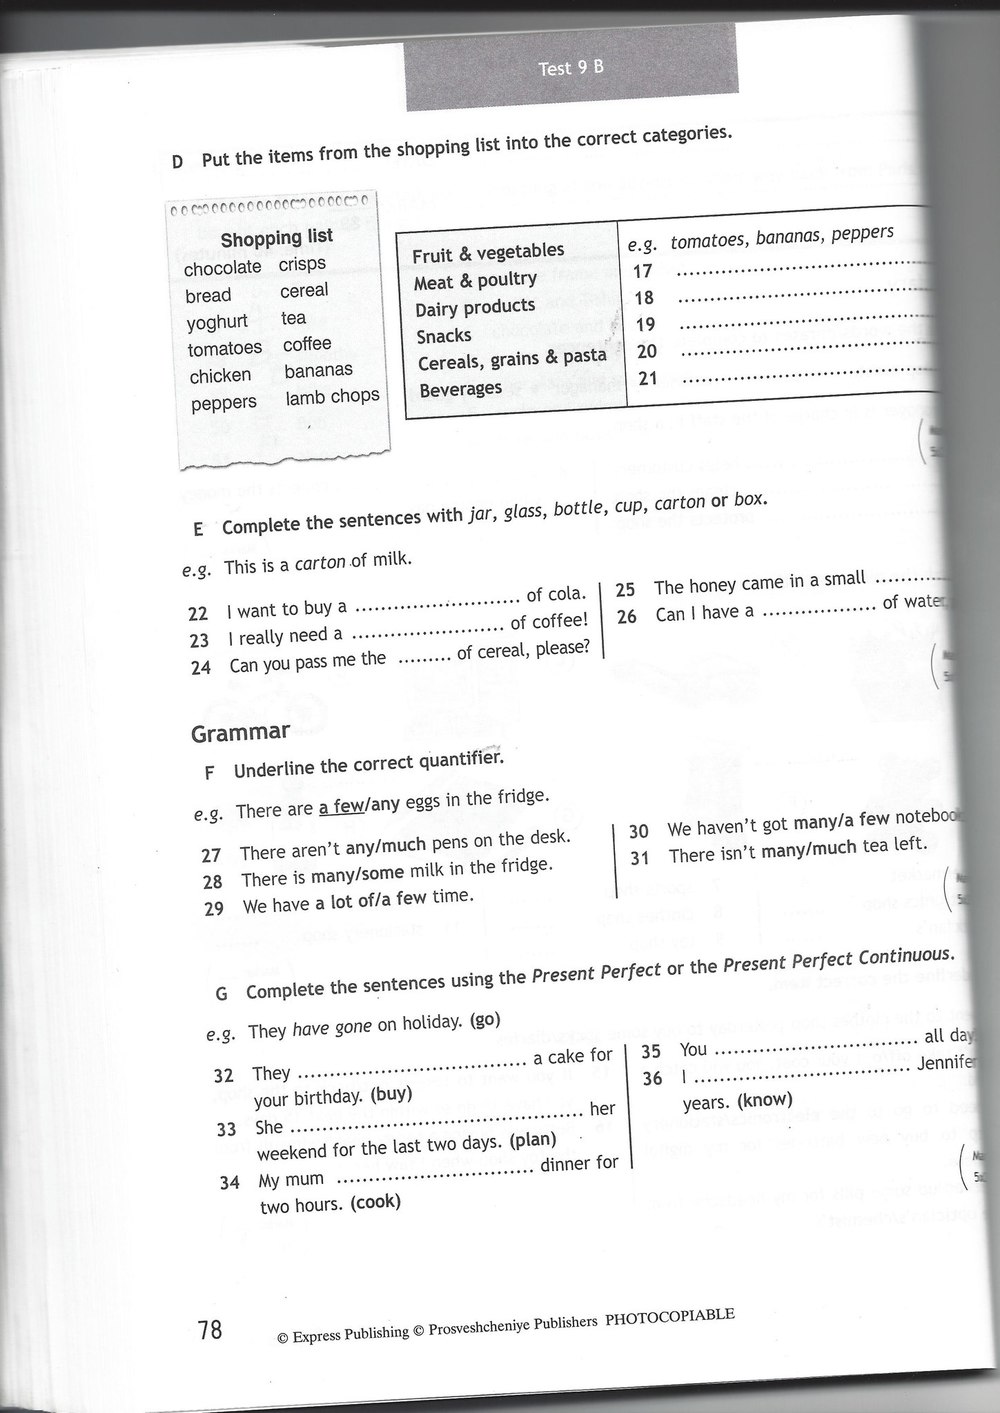 Module 7 spotlight 7 контрольная работа ответы. Гдз по английскому языку 7 тест буклет Spotlight ваулина. Английский тест 7 класс Spotlight. Test booklet 7 класс Spotlight. Test booklet 7 класс Spotlight Test 7.